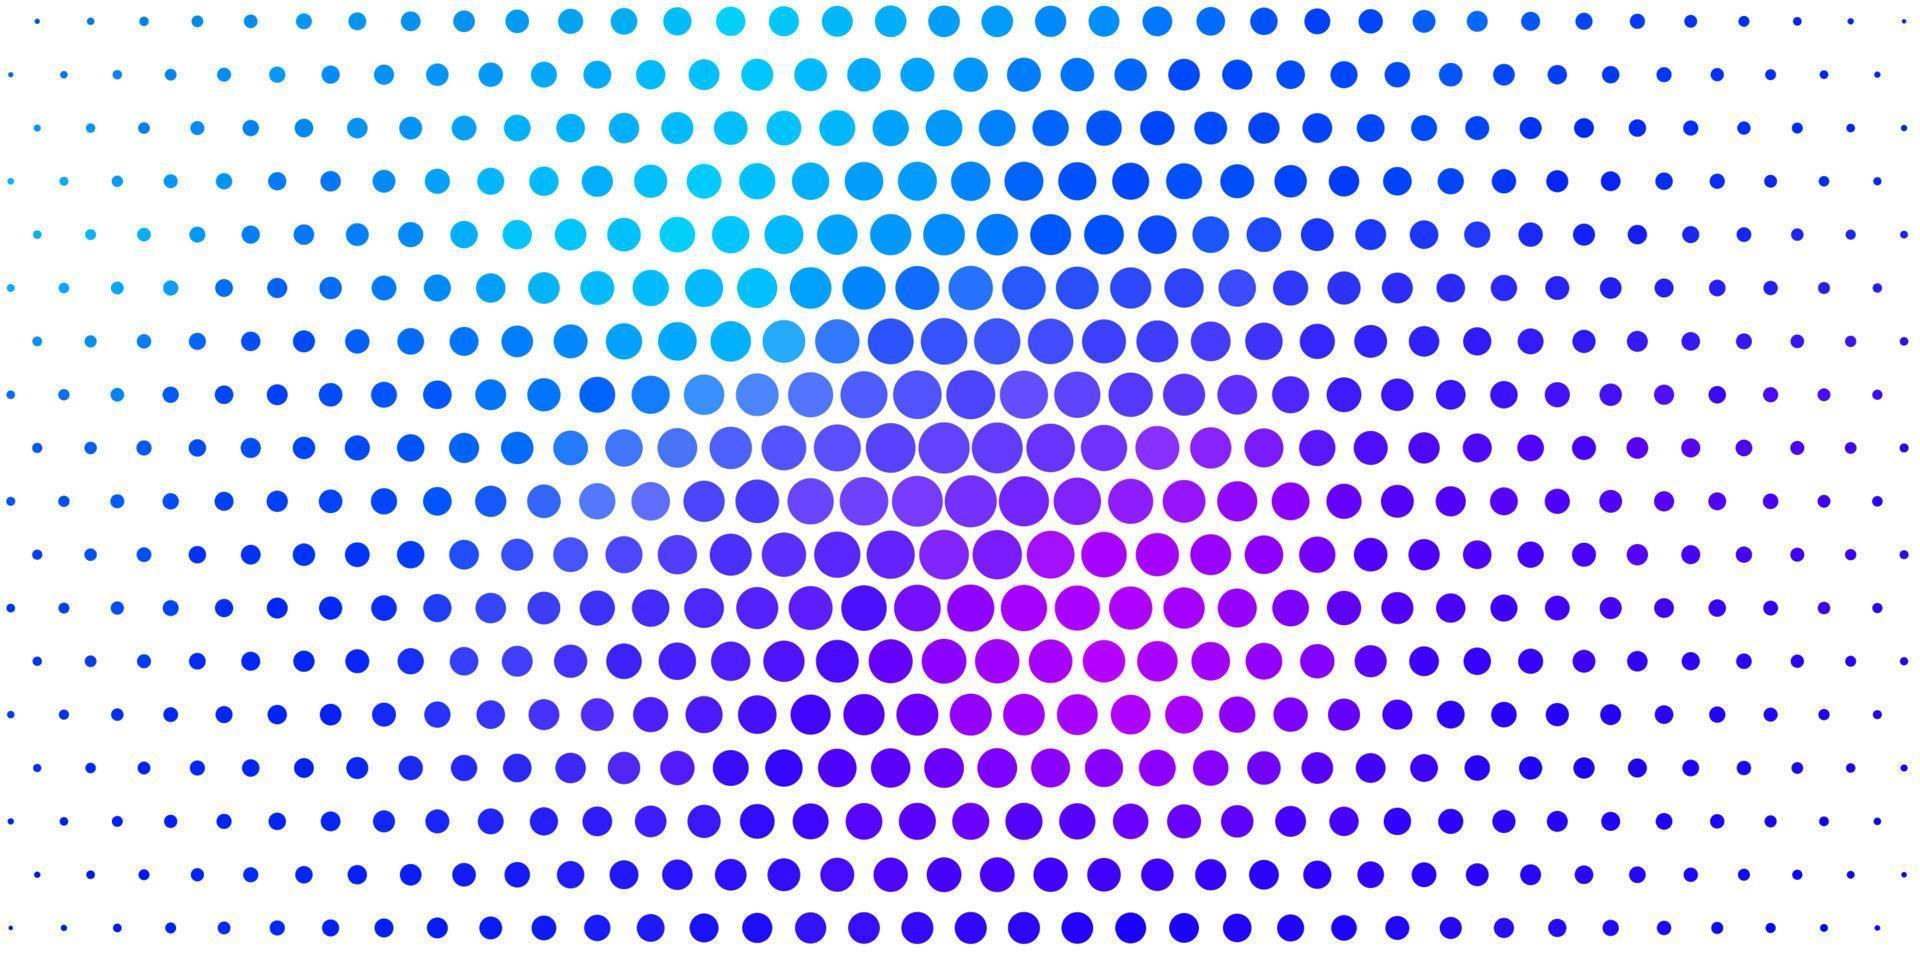 ljusblå, röd vektorbakgrund med cirklar. vektor